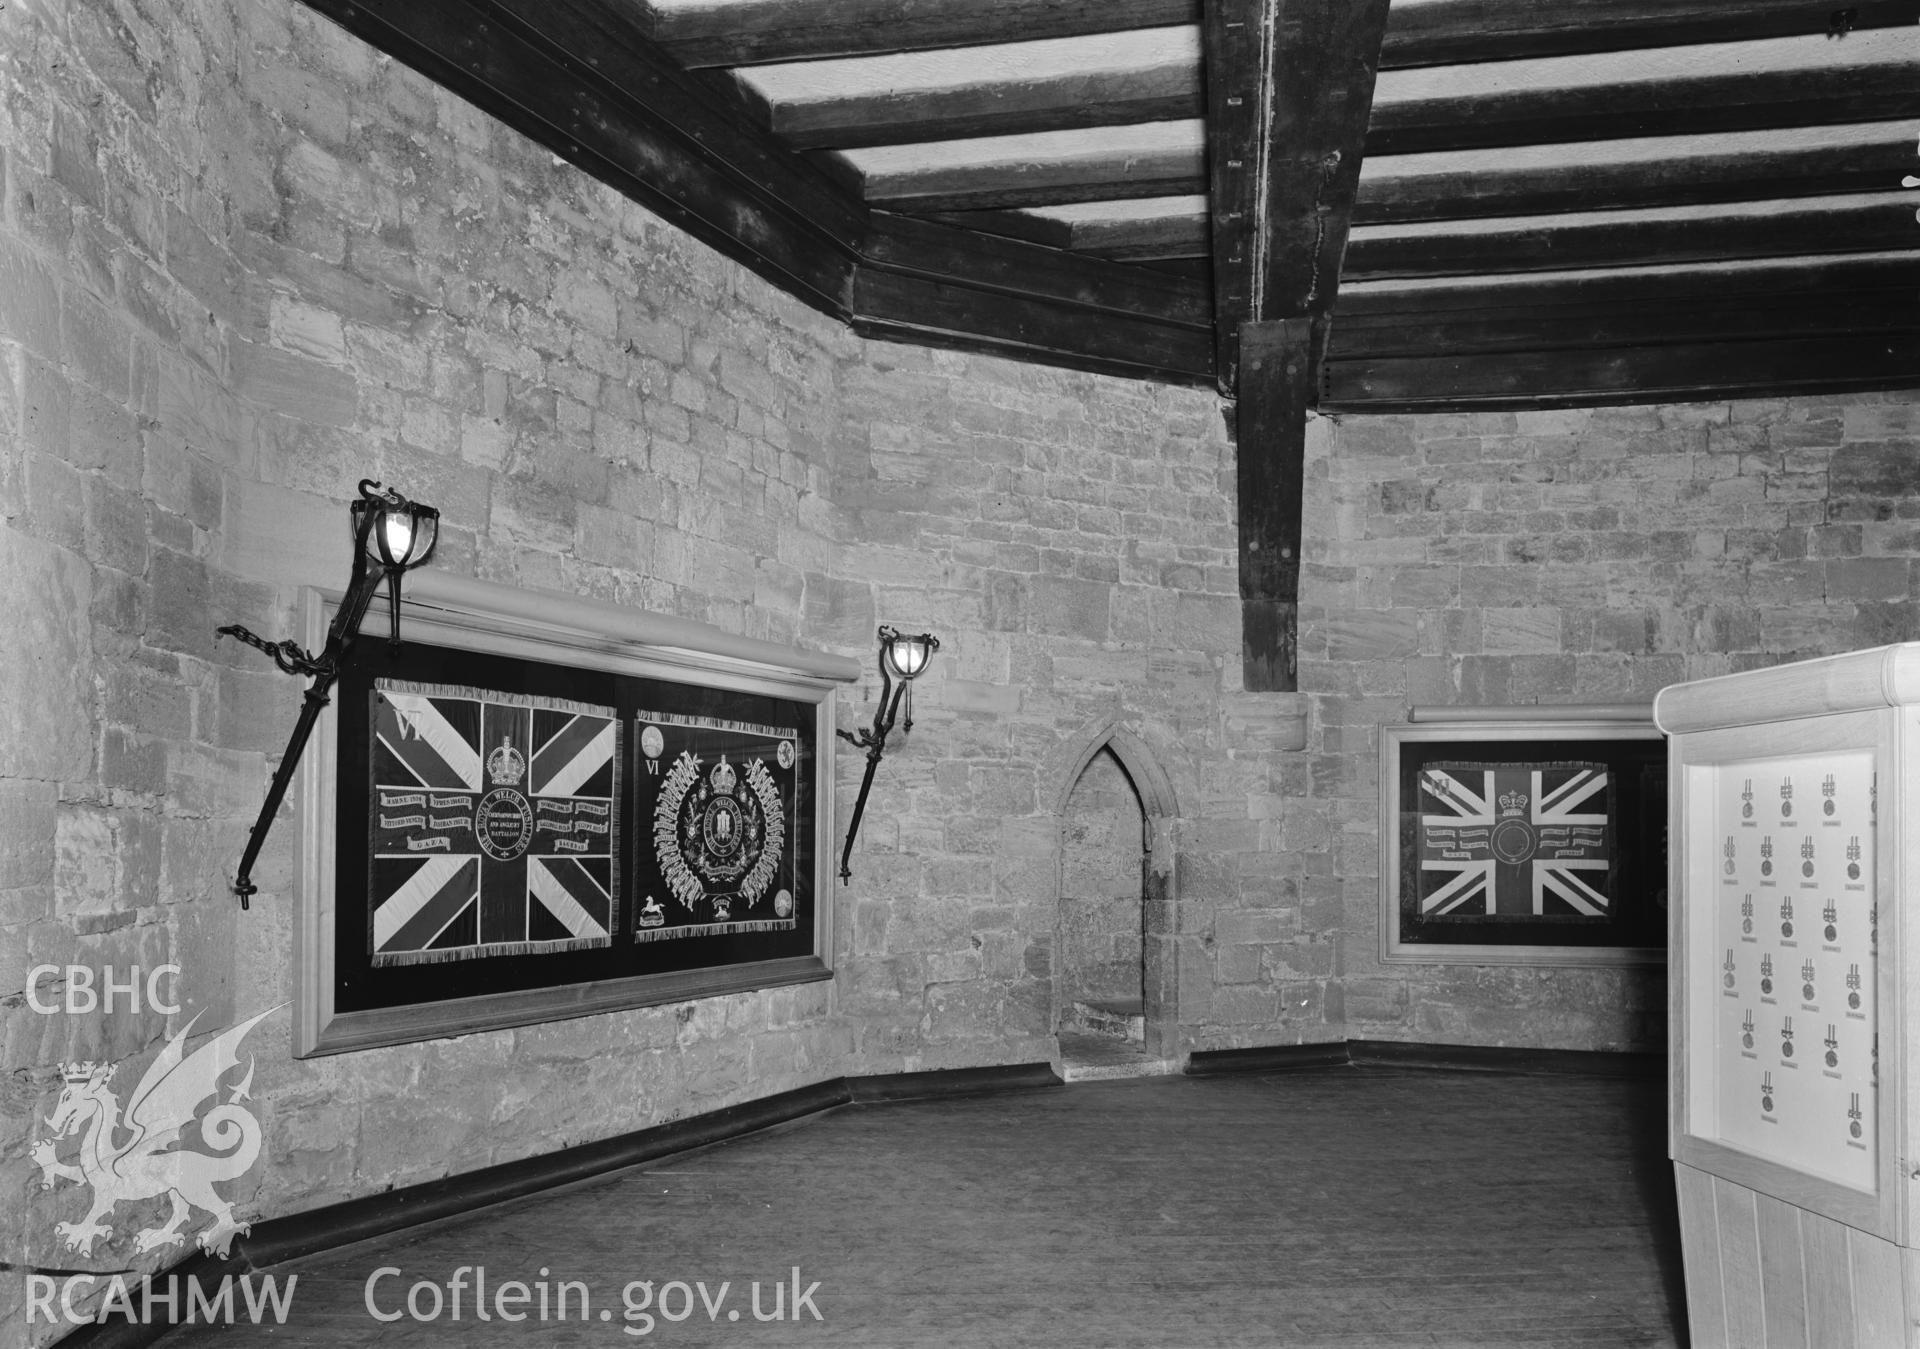 D.O.E photograph of Caernarfon Castle - Eagle Tower interior.